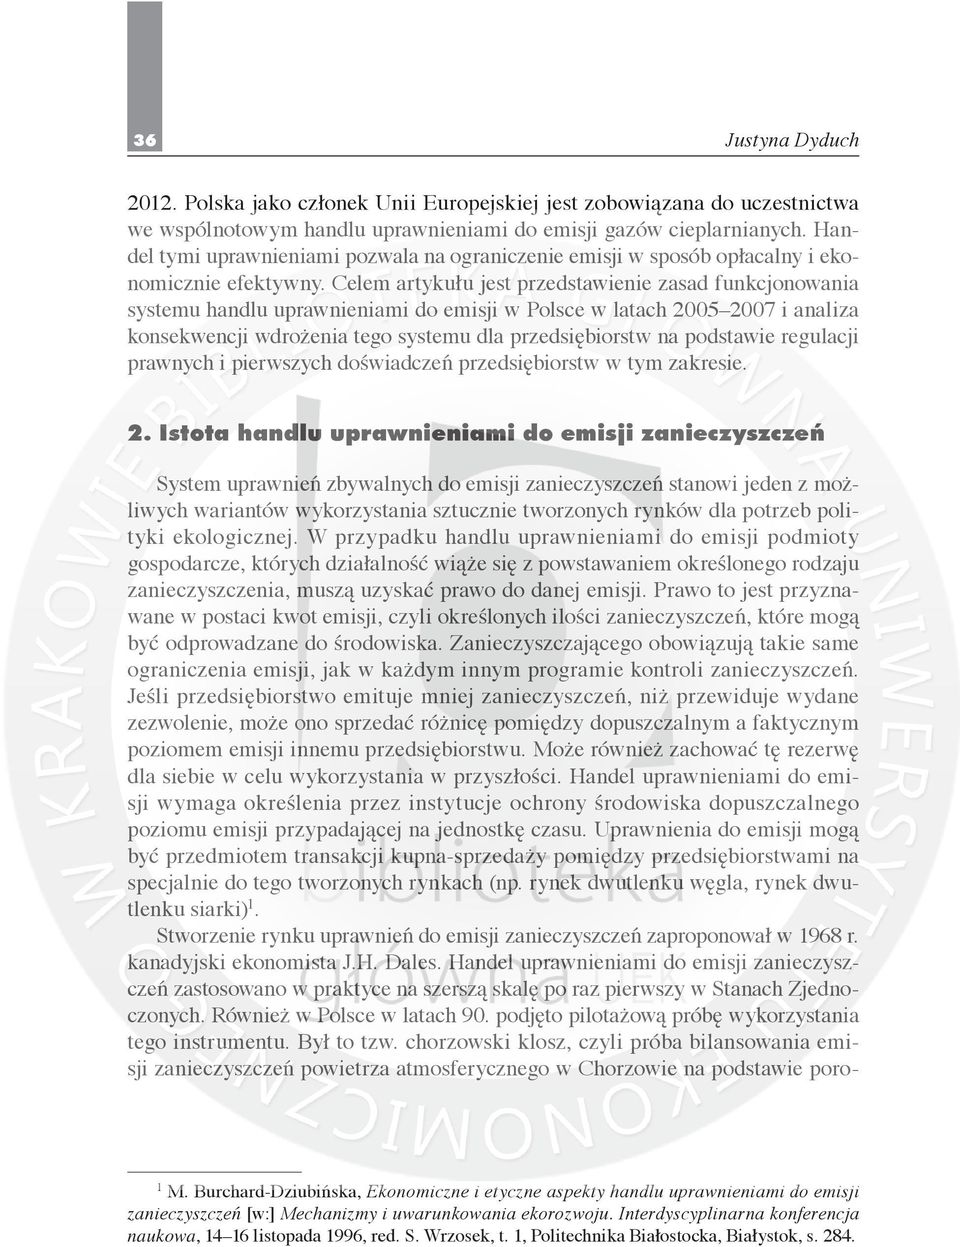 Celem artykułu jest przedstawienie zasad funkcjonowania systemu handlu uprawnieniami do emisji w Polsce w latach 2005 2007 i analiza konsekwencji wdrożenia tego systemu dla przedsiębiorstw na